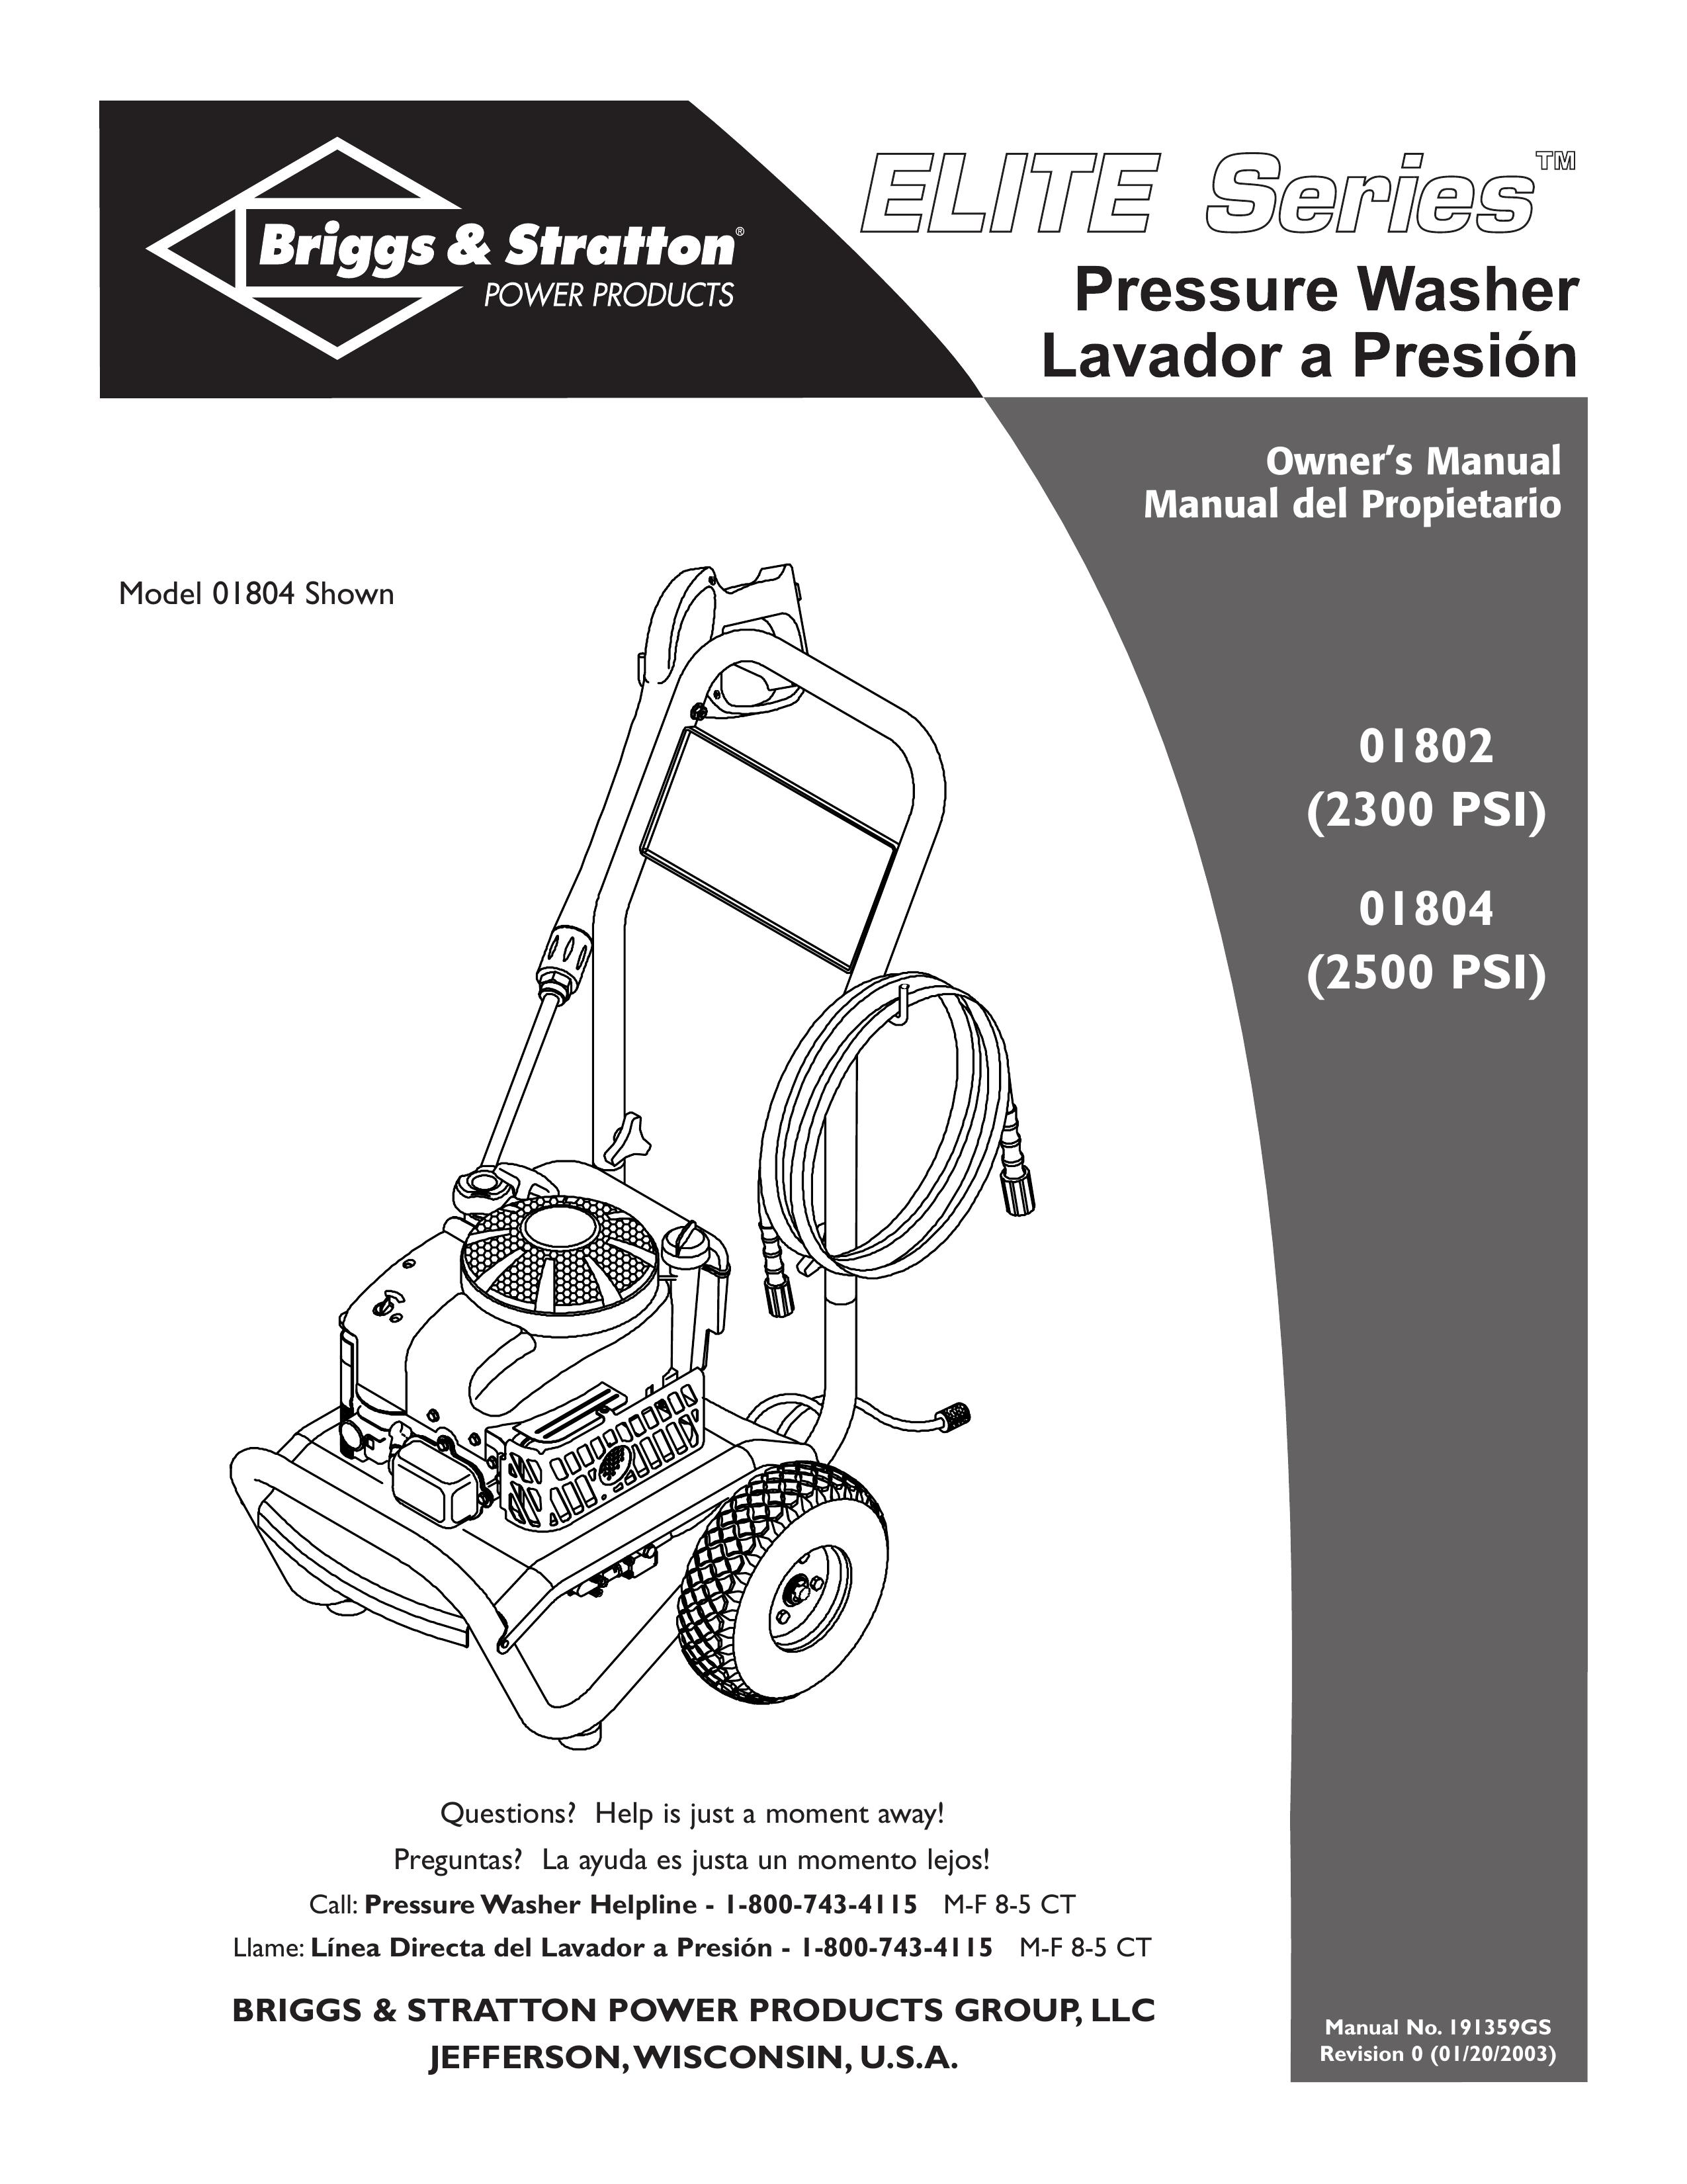 Briggs & Stratton 01802, 01804 Pressure Washer User Manual